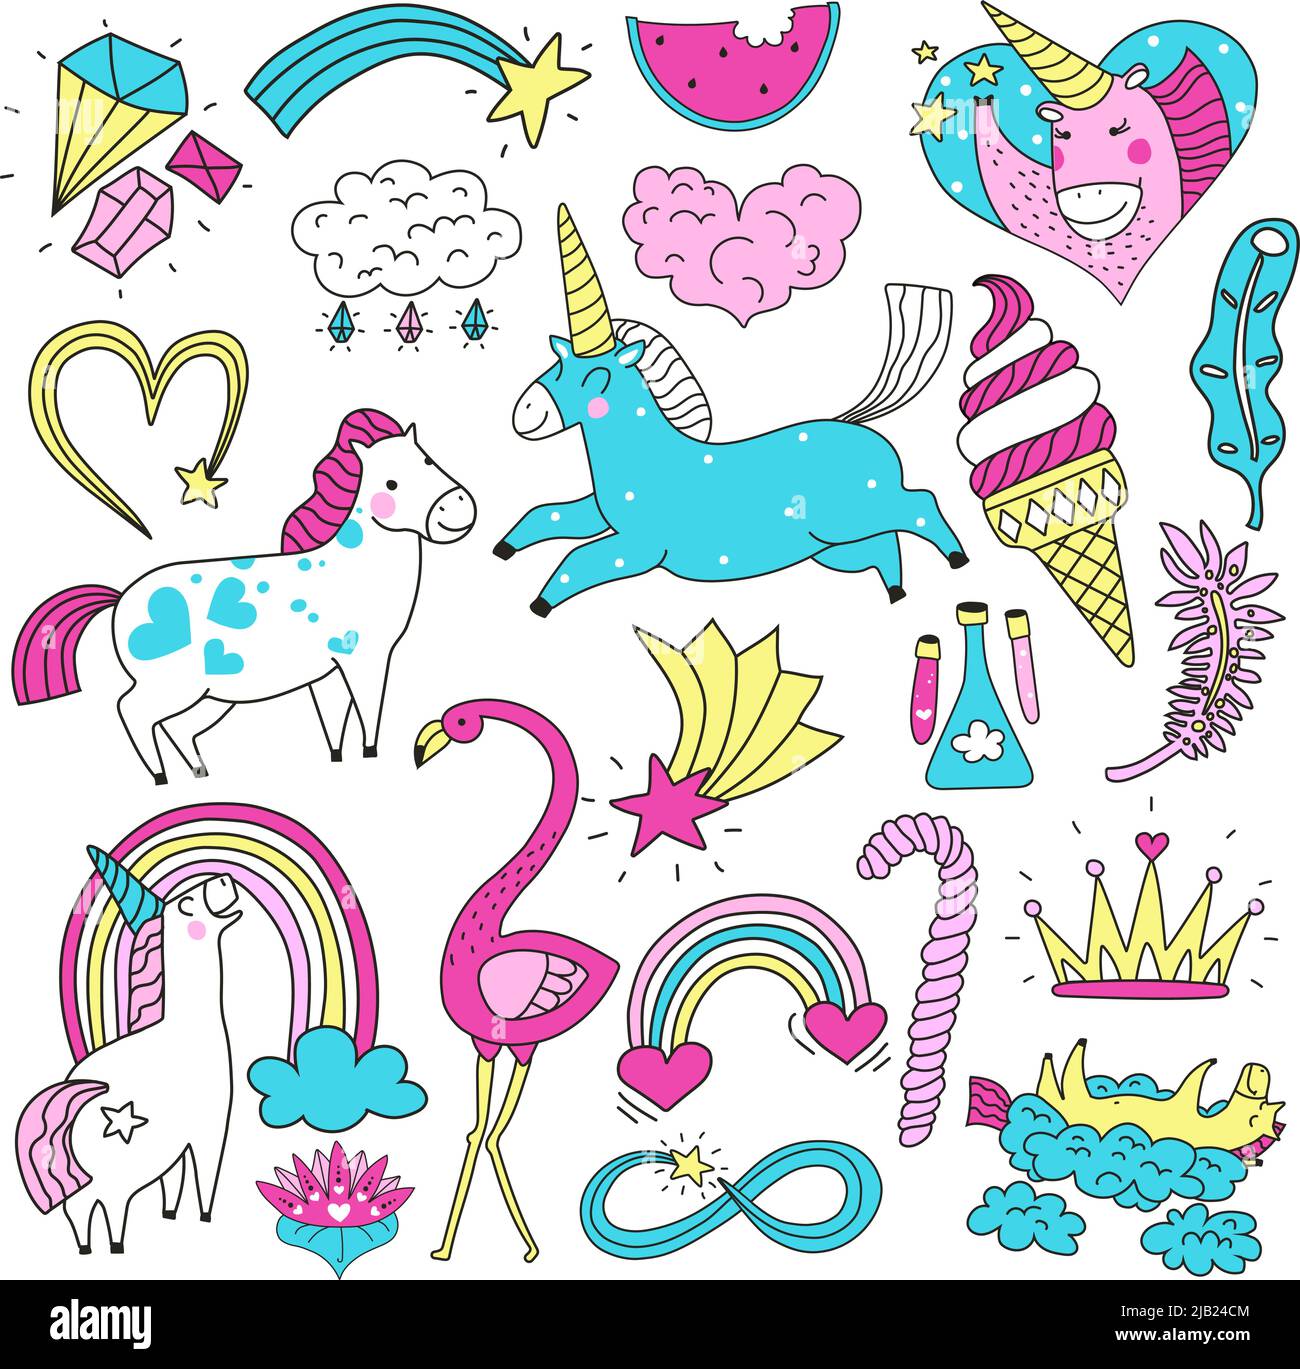 Ensemble coloré de doodle lumineux de mignon chevaux magiques unicorns étoiles arc-en-ciel coeurs isolés sur fond blanc illustration vectorielle Illustration de Vecteur